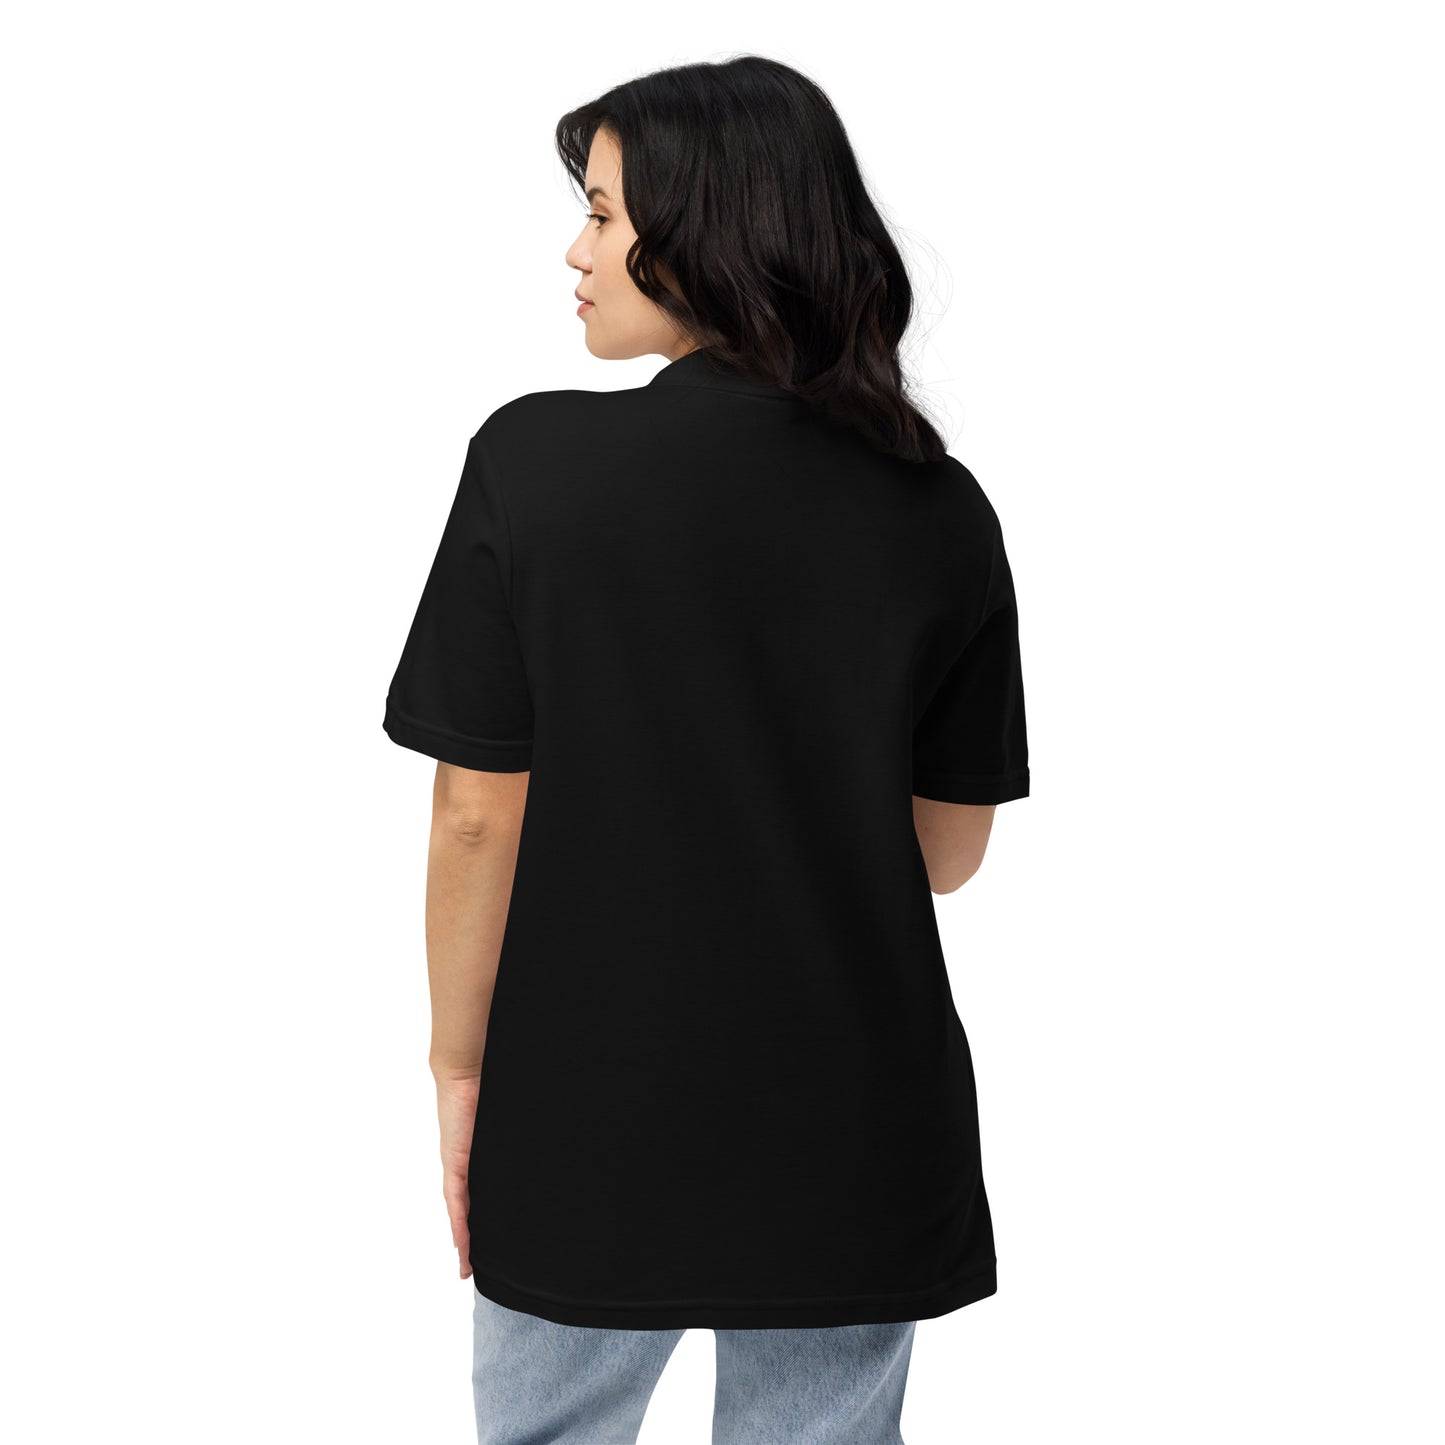 VR A1 - Unisex pique polo shirt